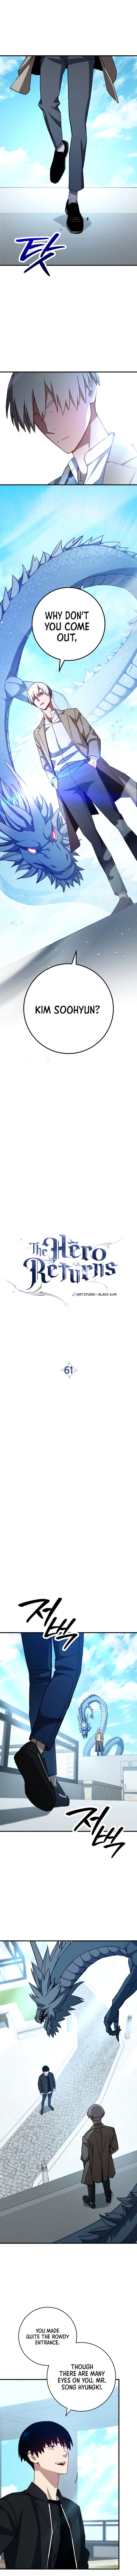 The Hero Returns 61 1